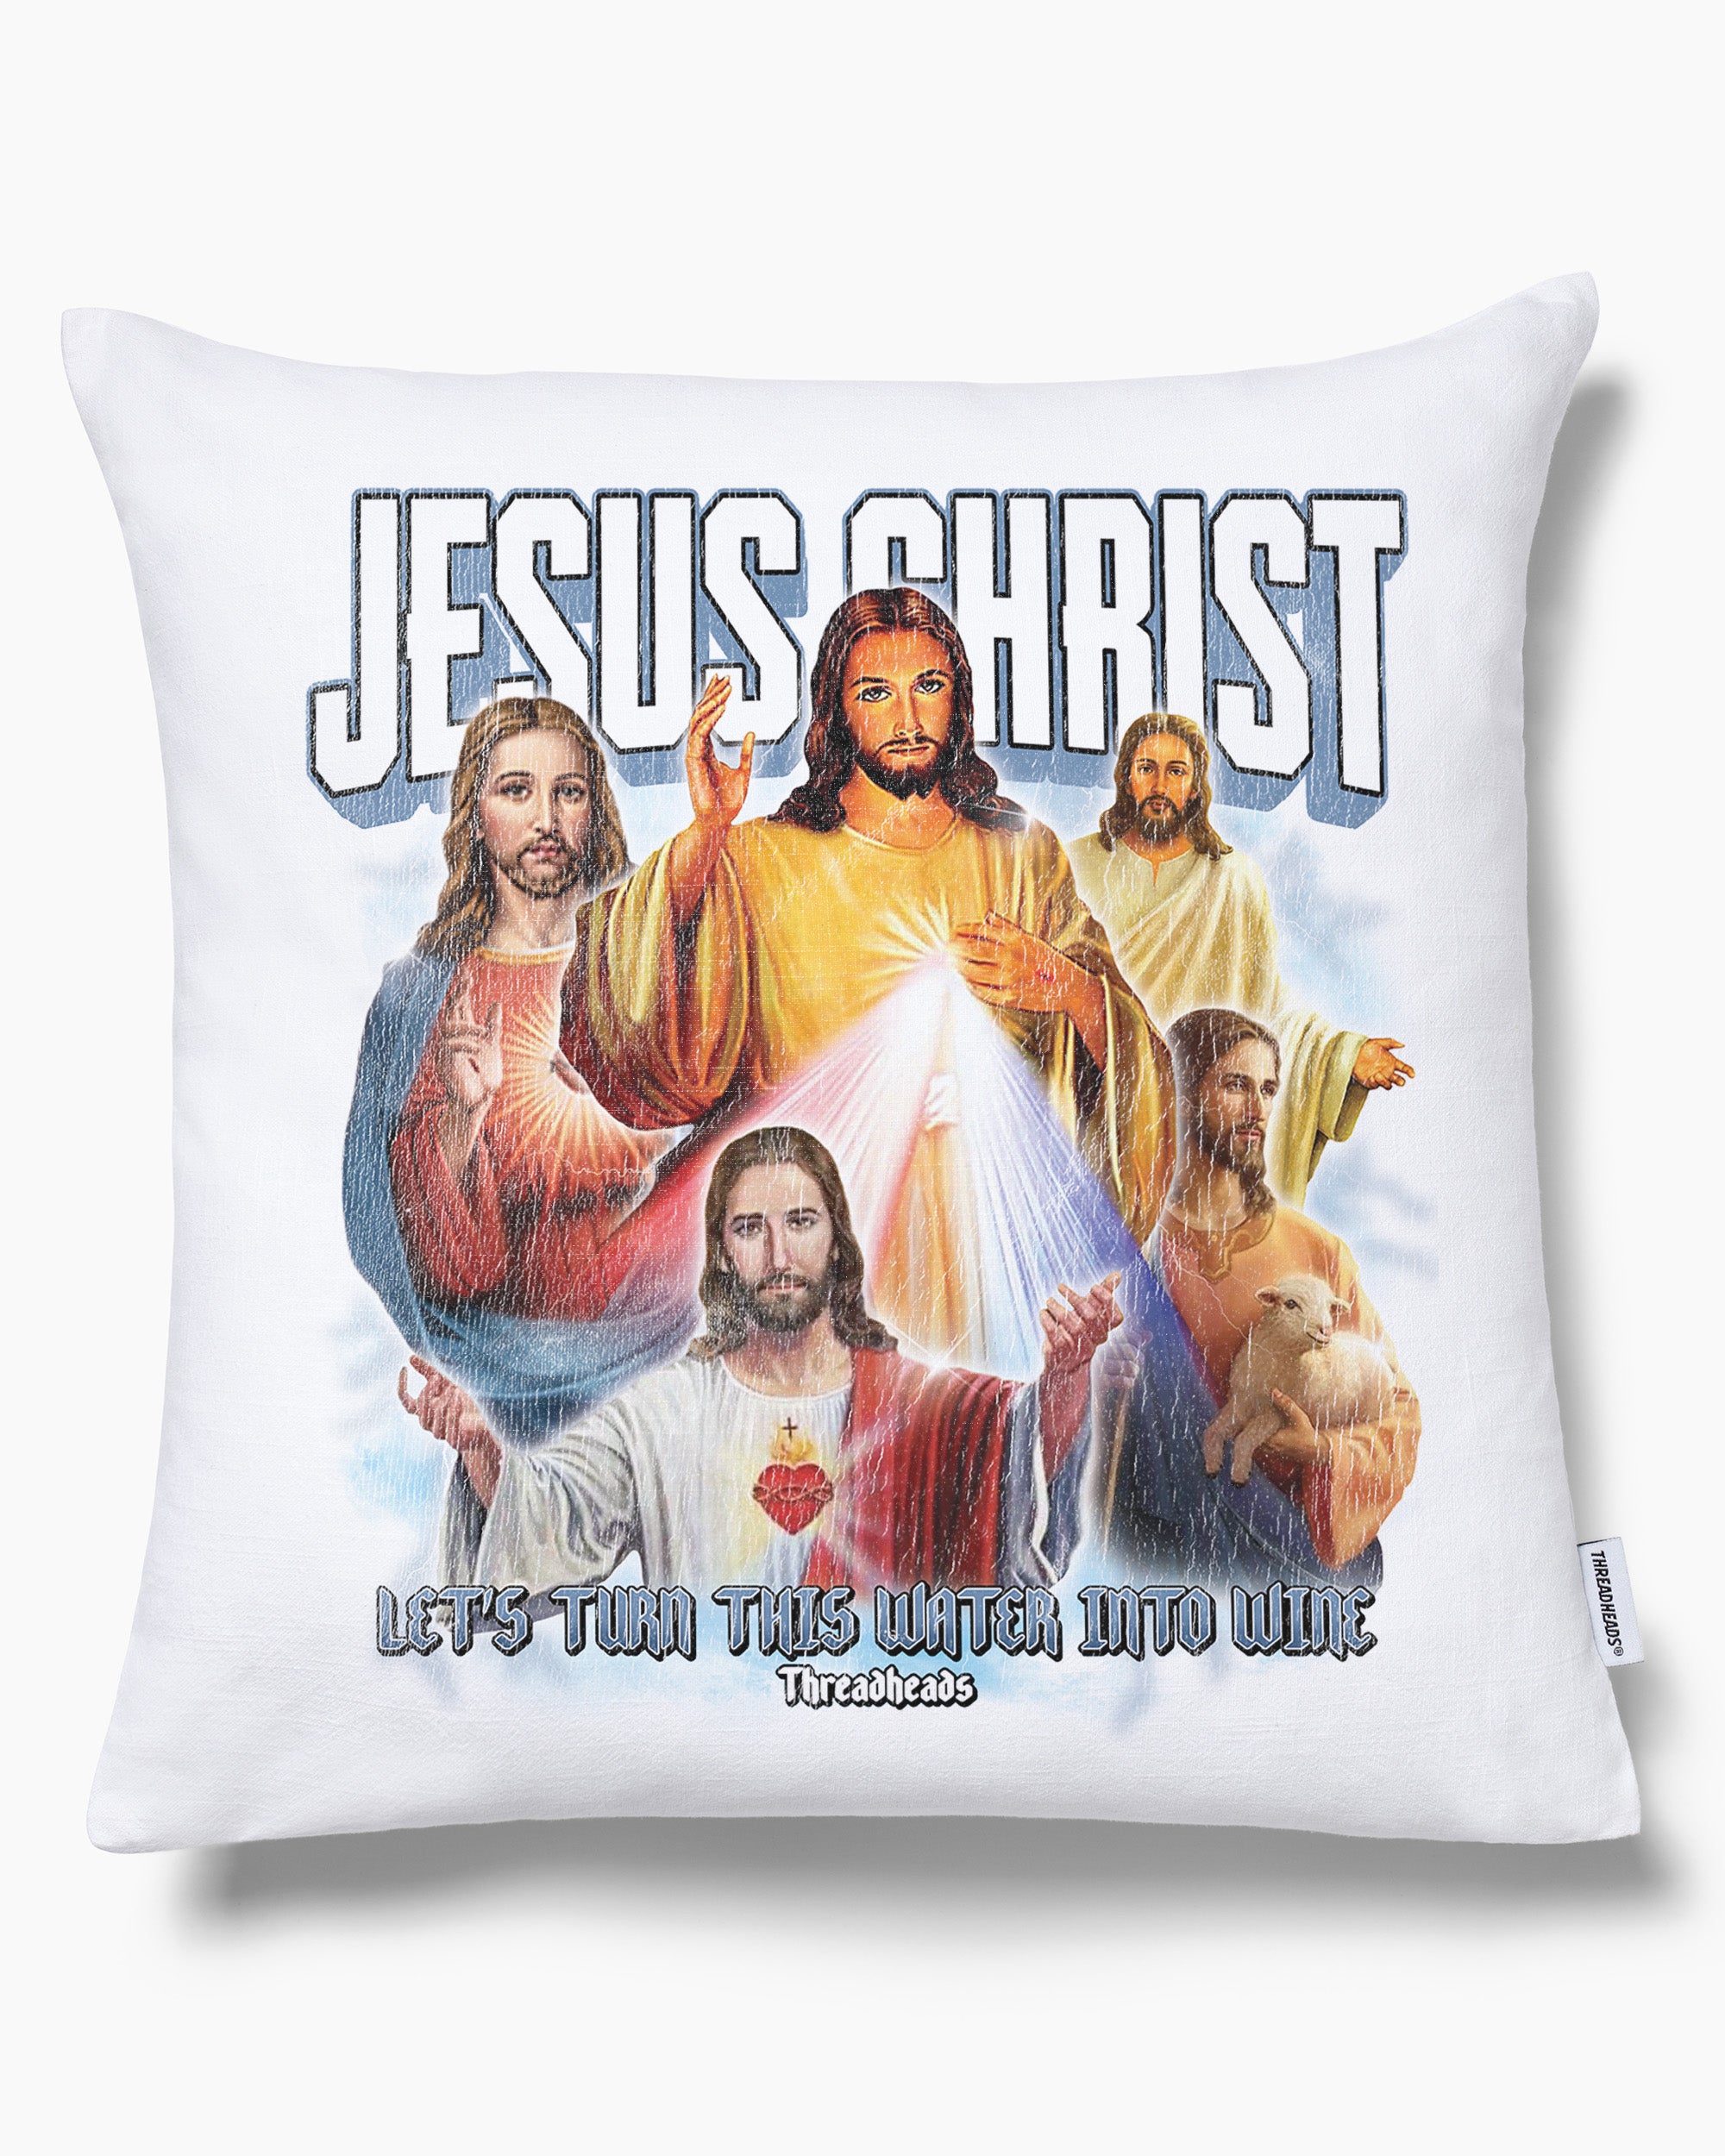 Vintage Jesus Christ Cushion